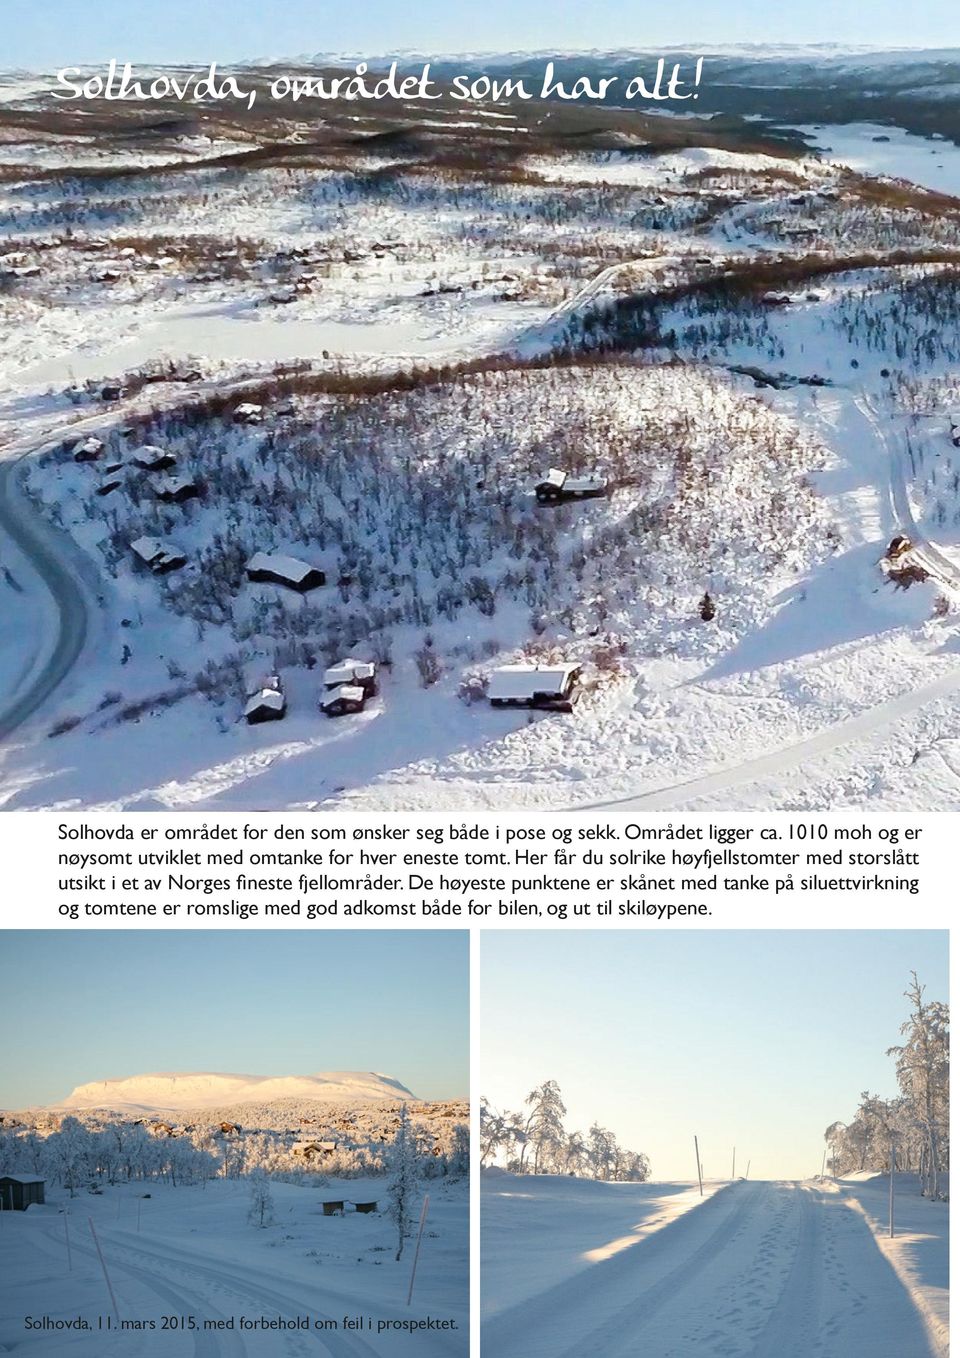 Her får du solrike høyfjellstomter med storslått utsikt i et av Norges fineste fjellområder.